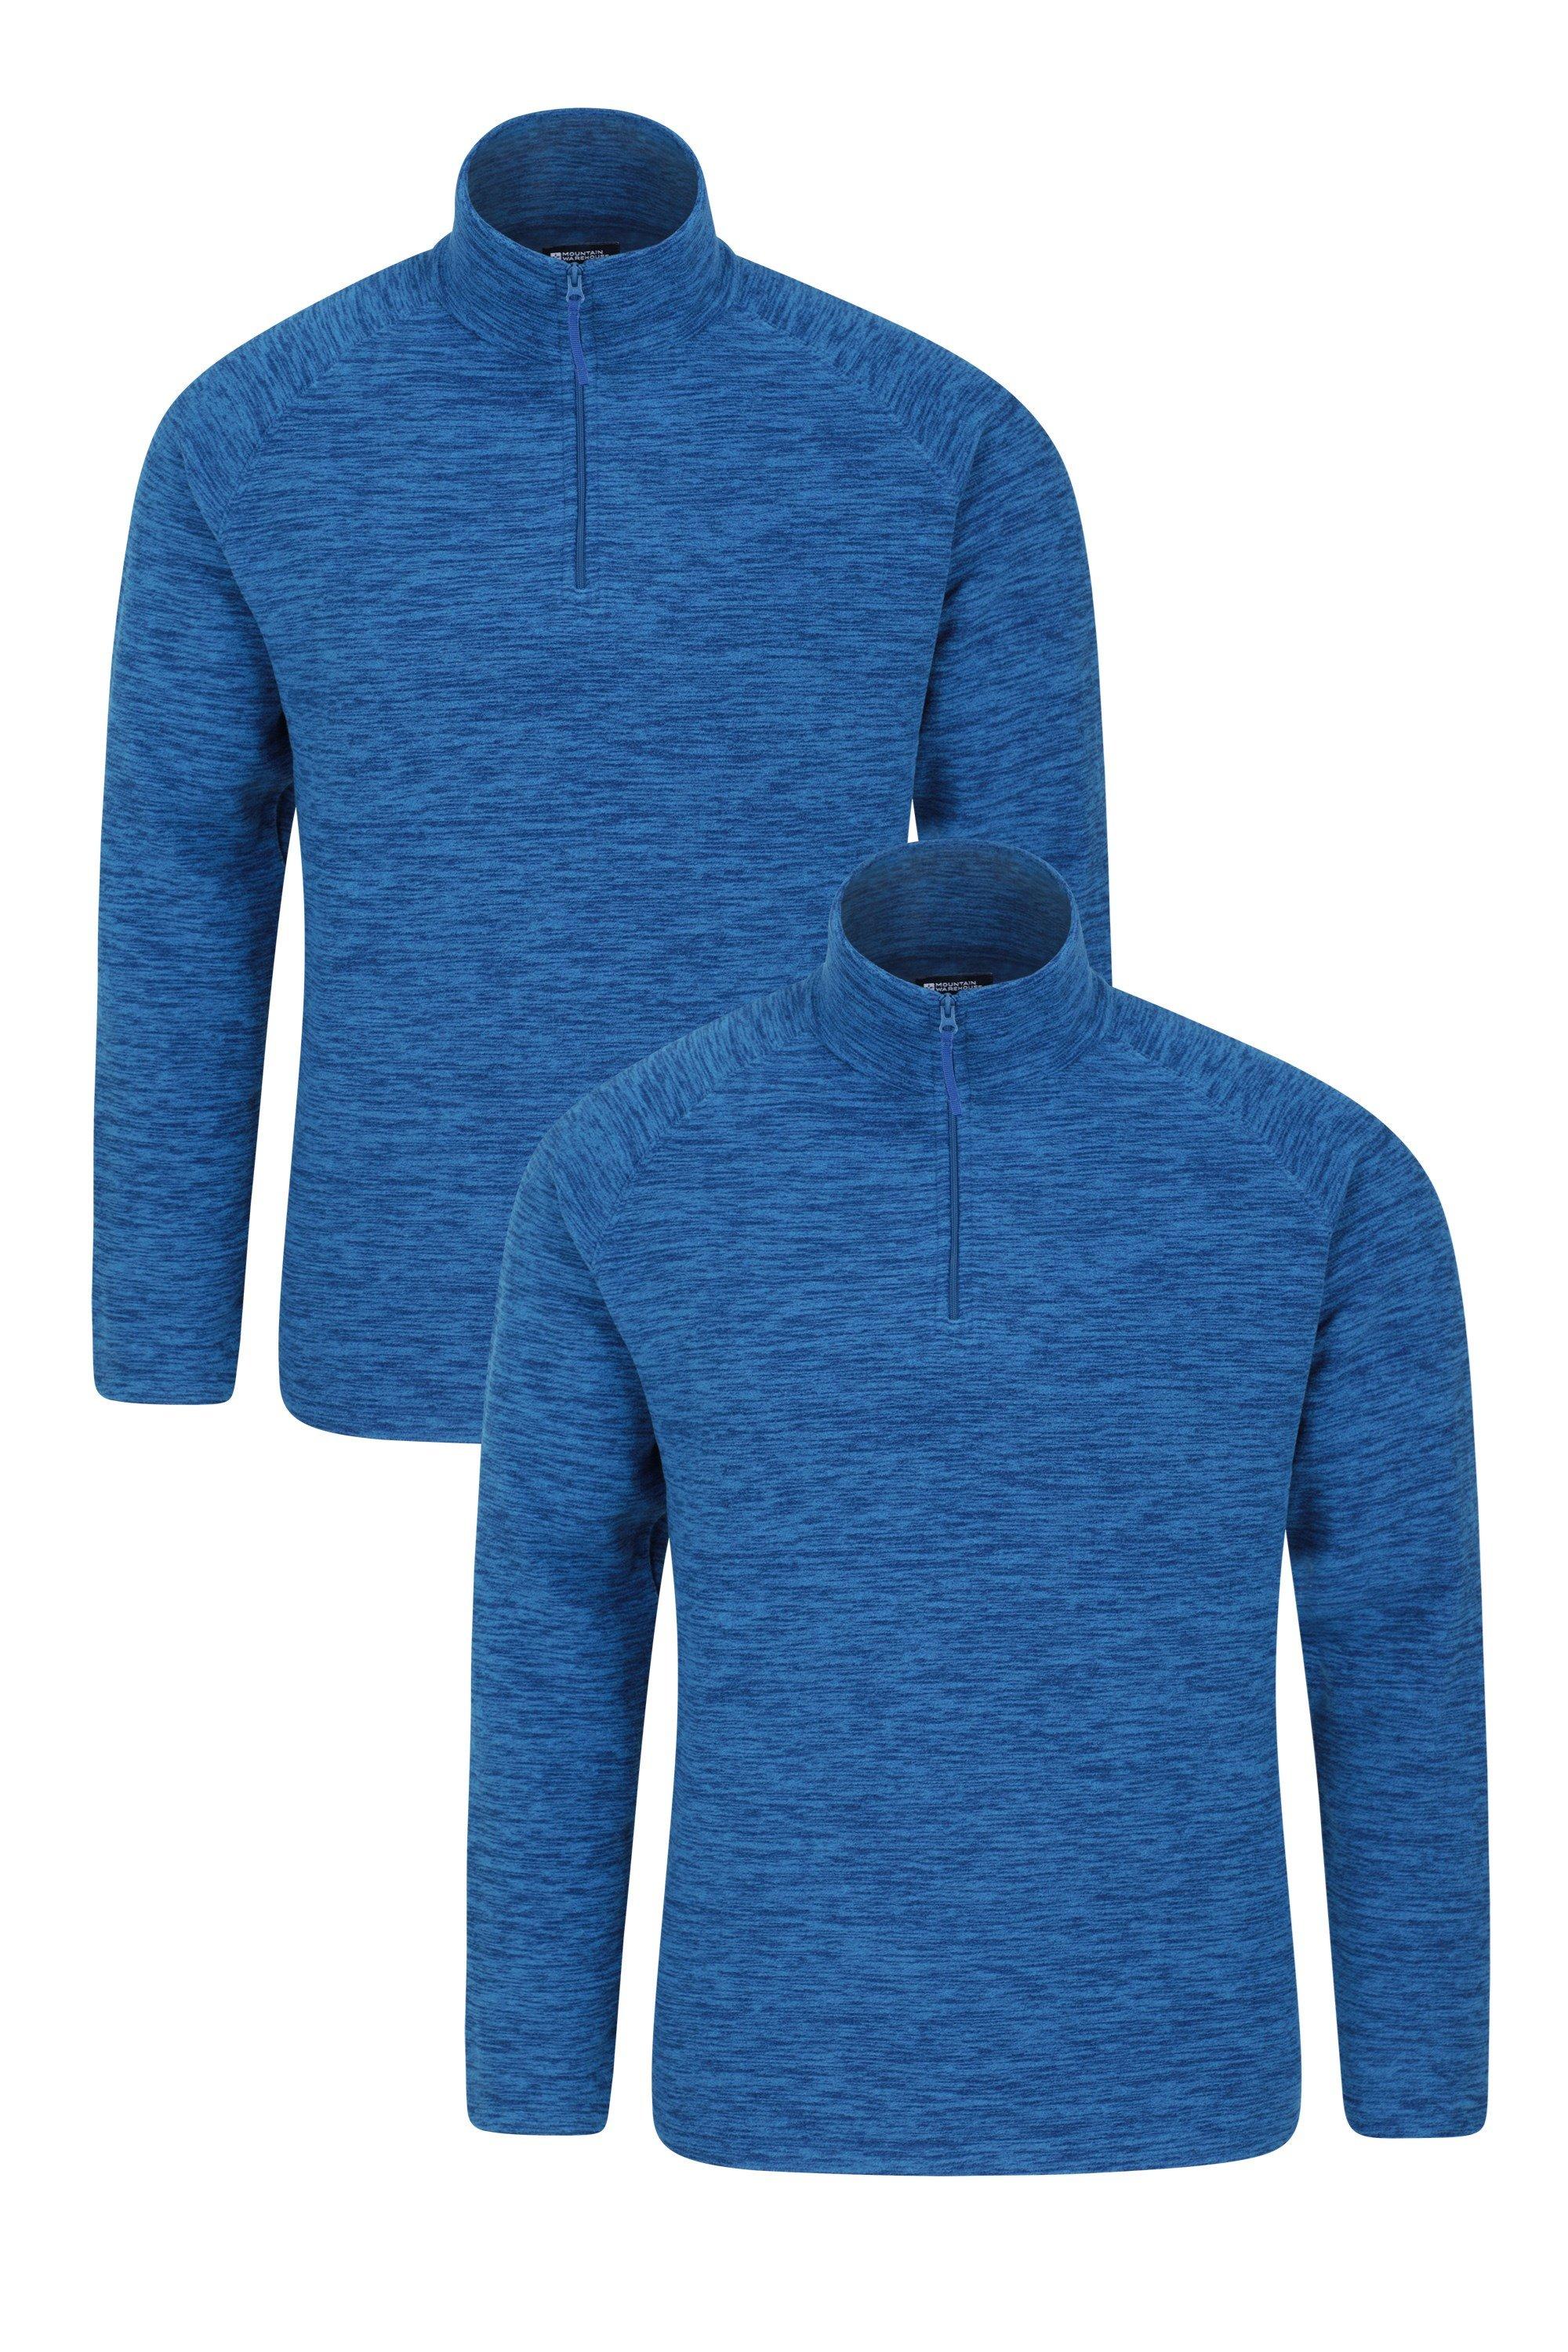 Snowdon Top Дышащий прогулочный пуловер из микрофлиса Mountain Warehouse, синий